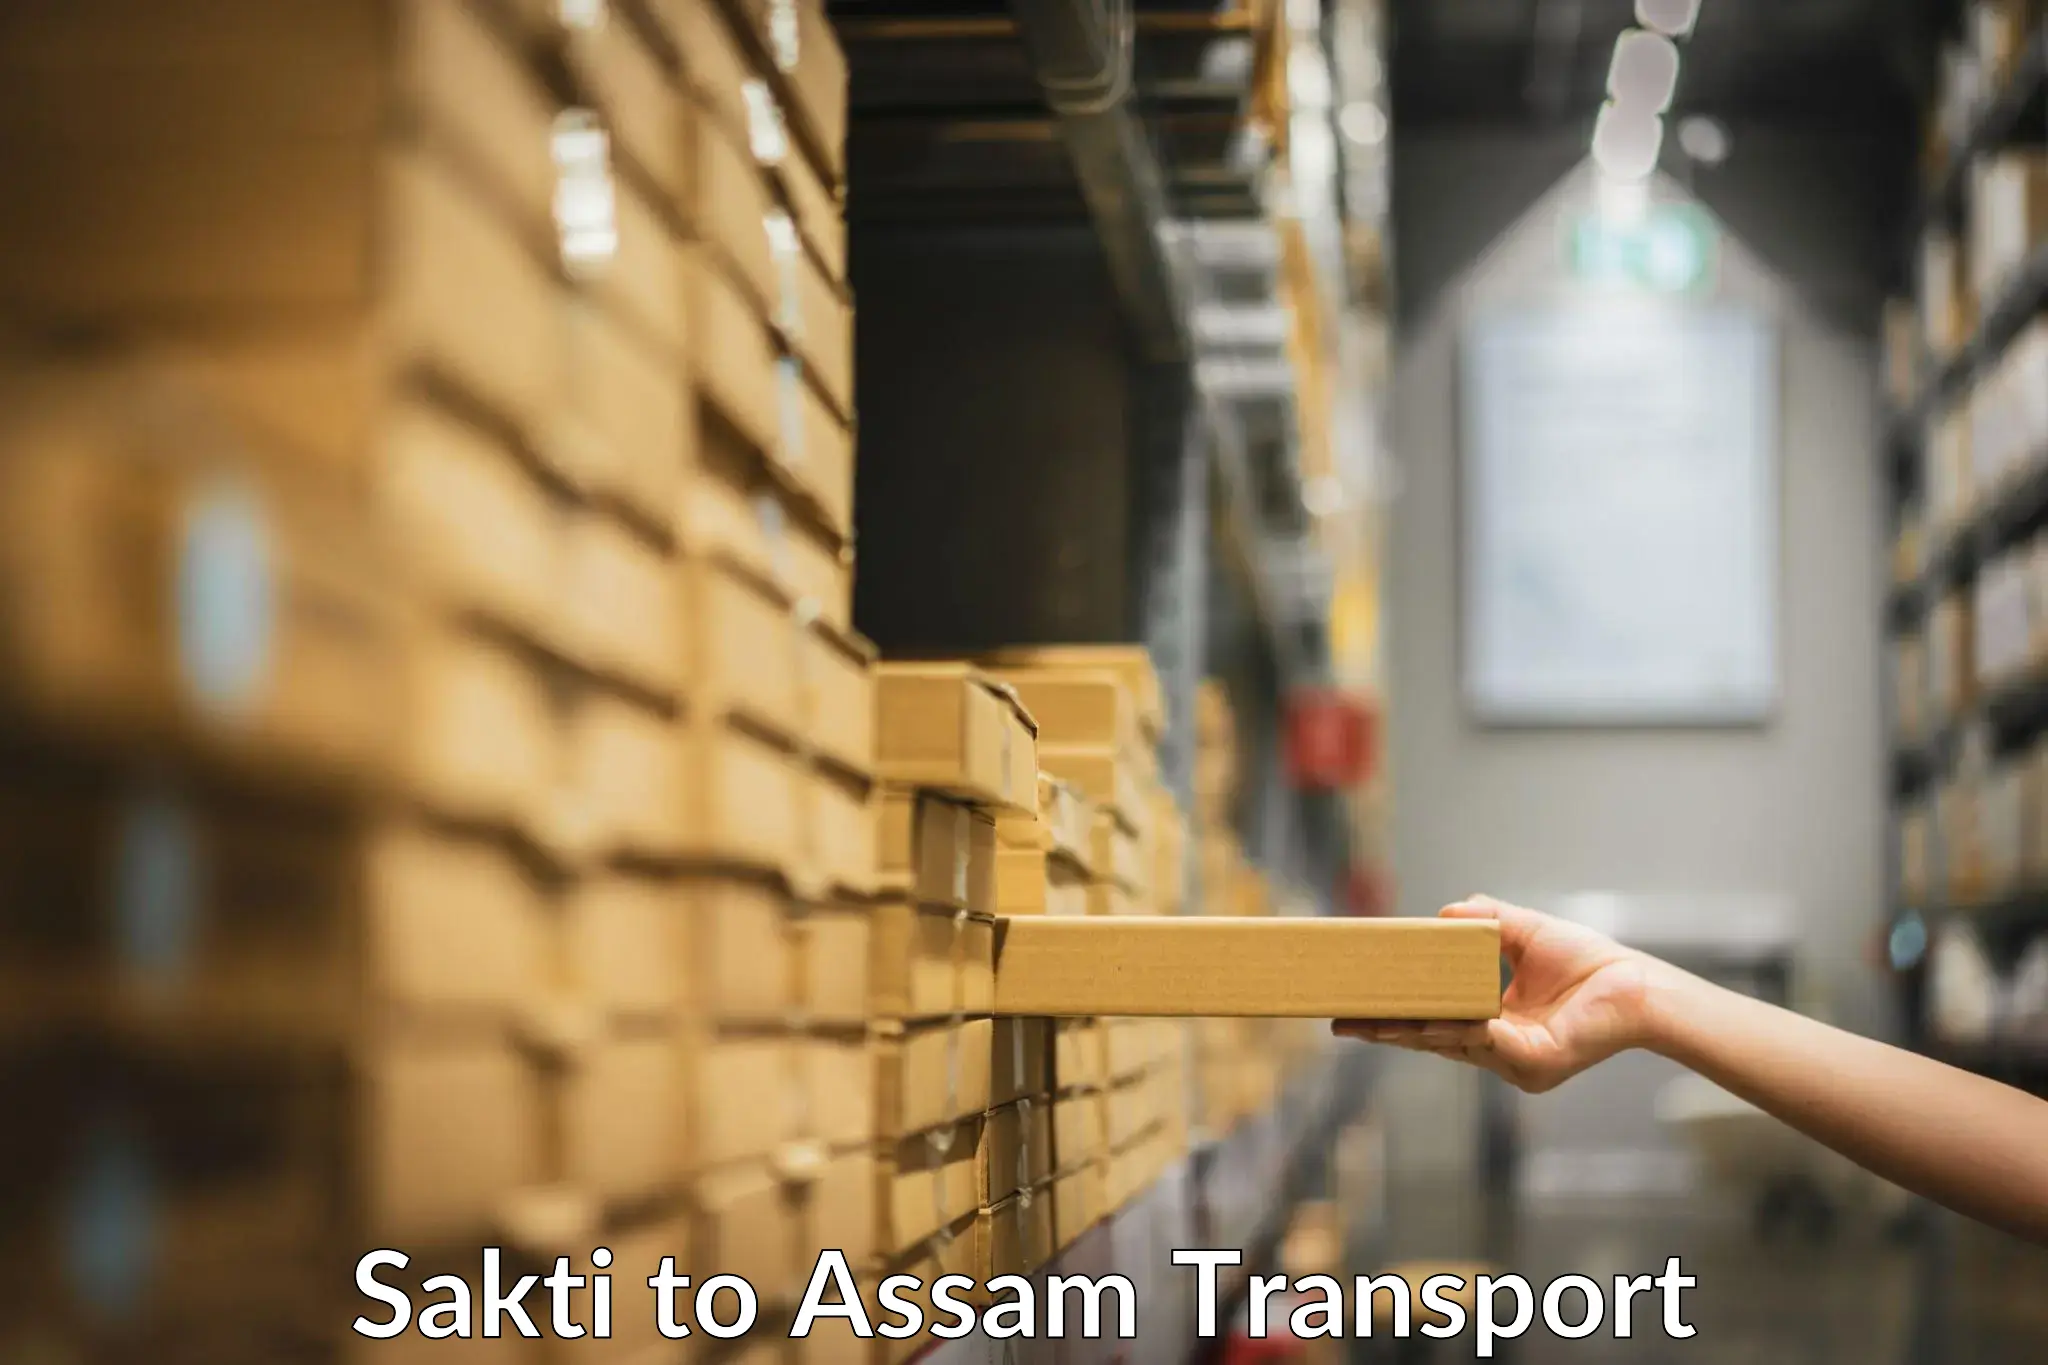 Road transport online services Sakti to Fekamari